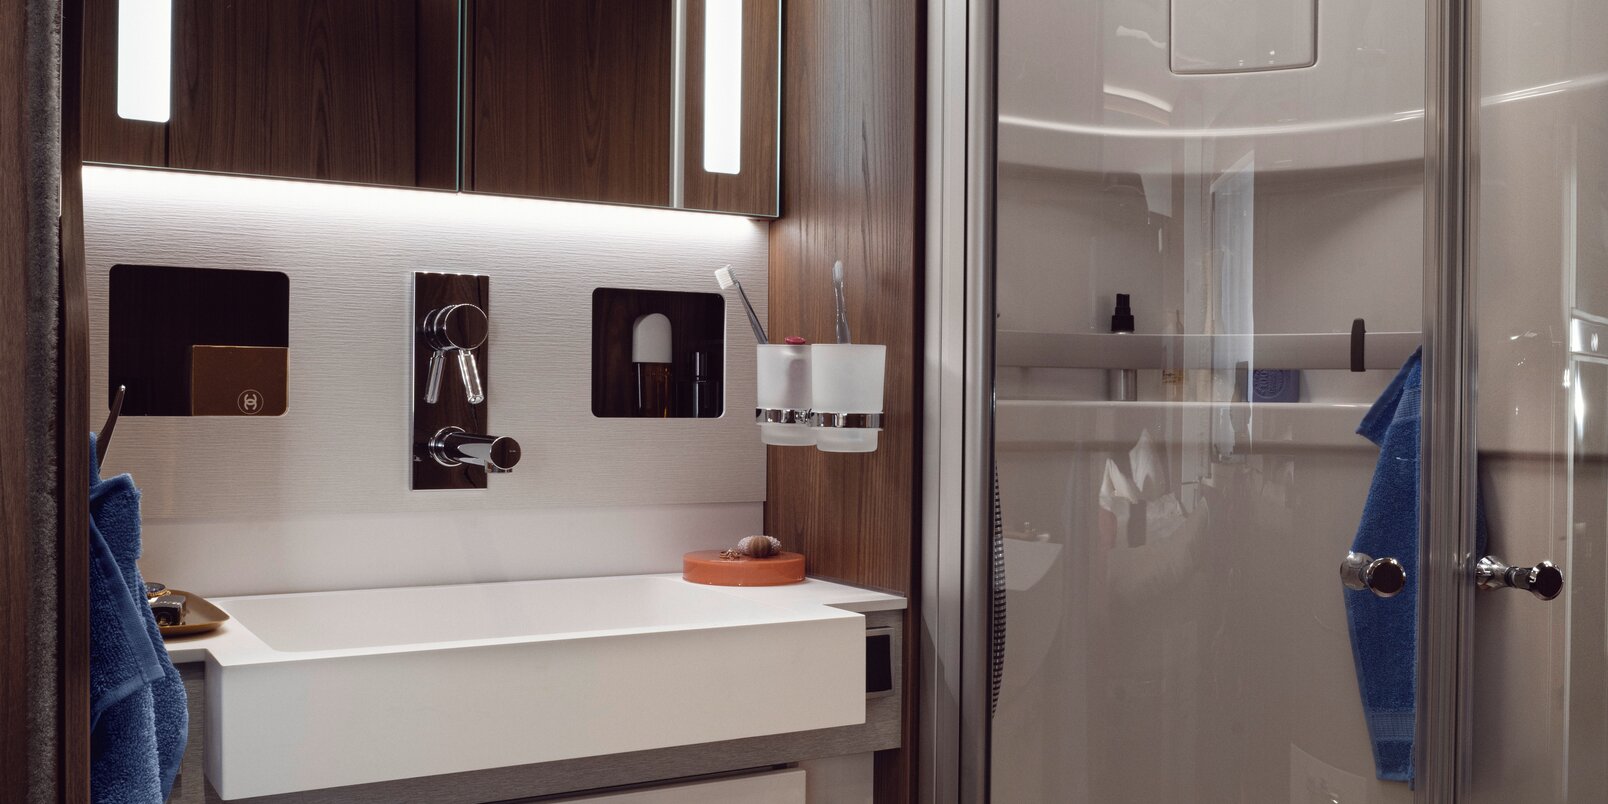 Bagno di tipo salone nell’HYMER B-ML I 890: armadio con specchio illuminato, cassetti estraibili sotto il lavandino, doccia separata con porte vetrate